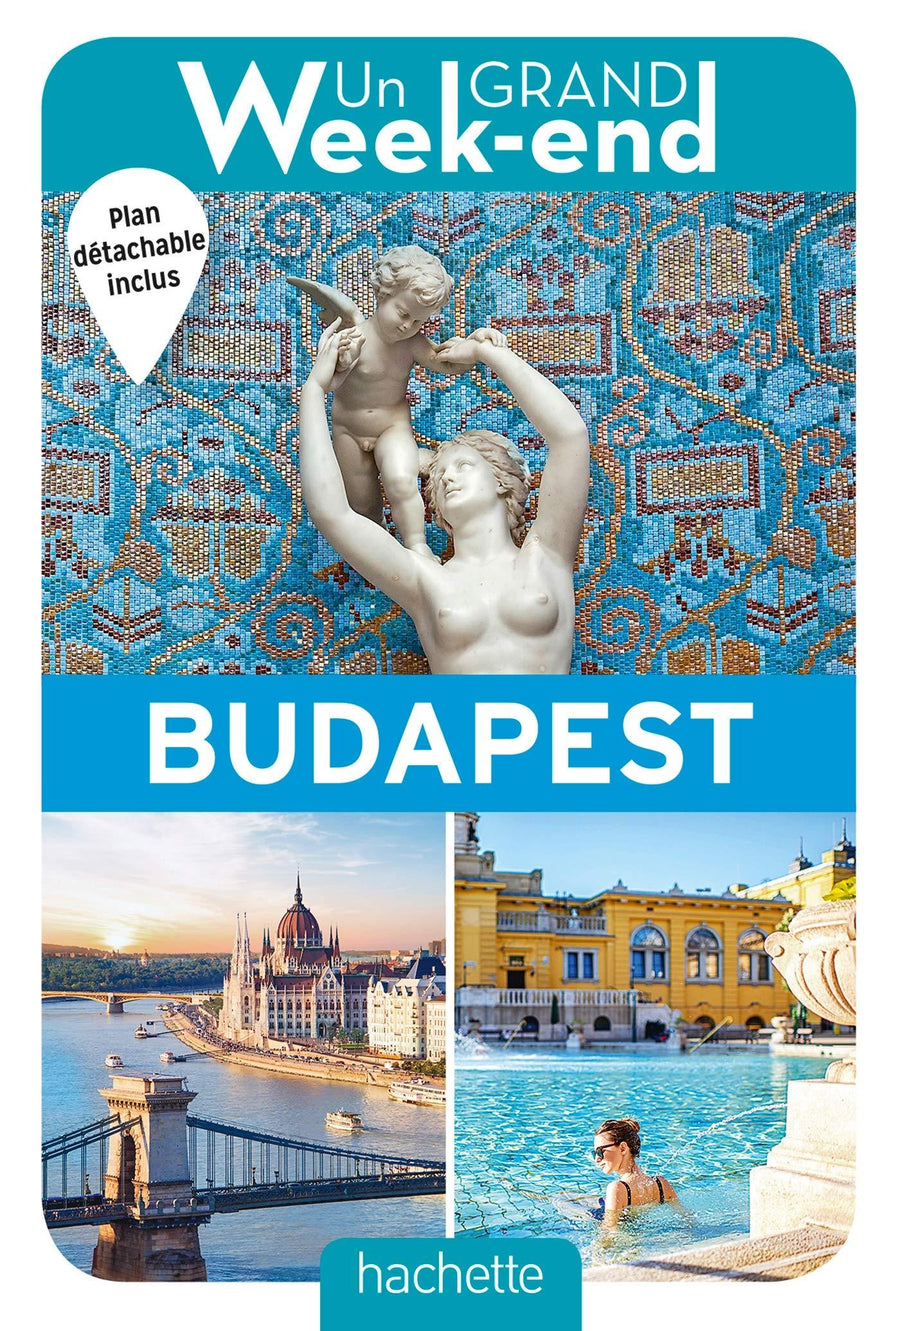 Guide de voyage - Un Grand Week-end à Budapest | Hachette guide de voyage Hachette 